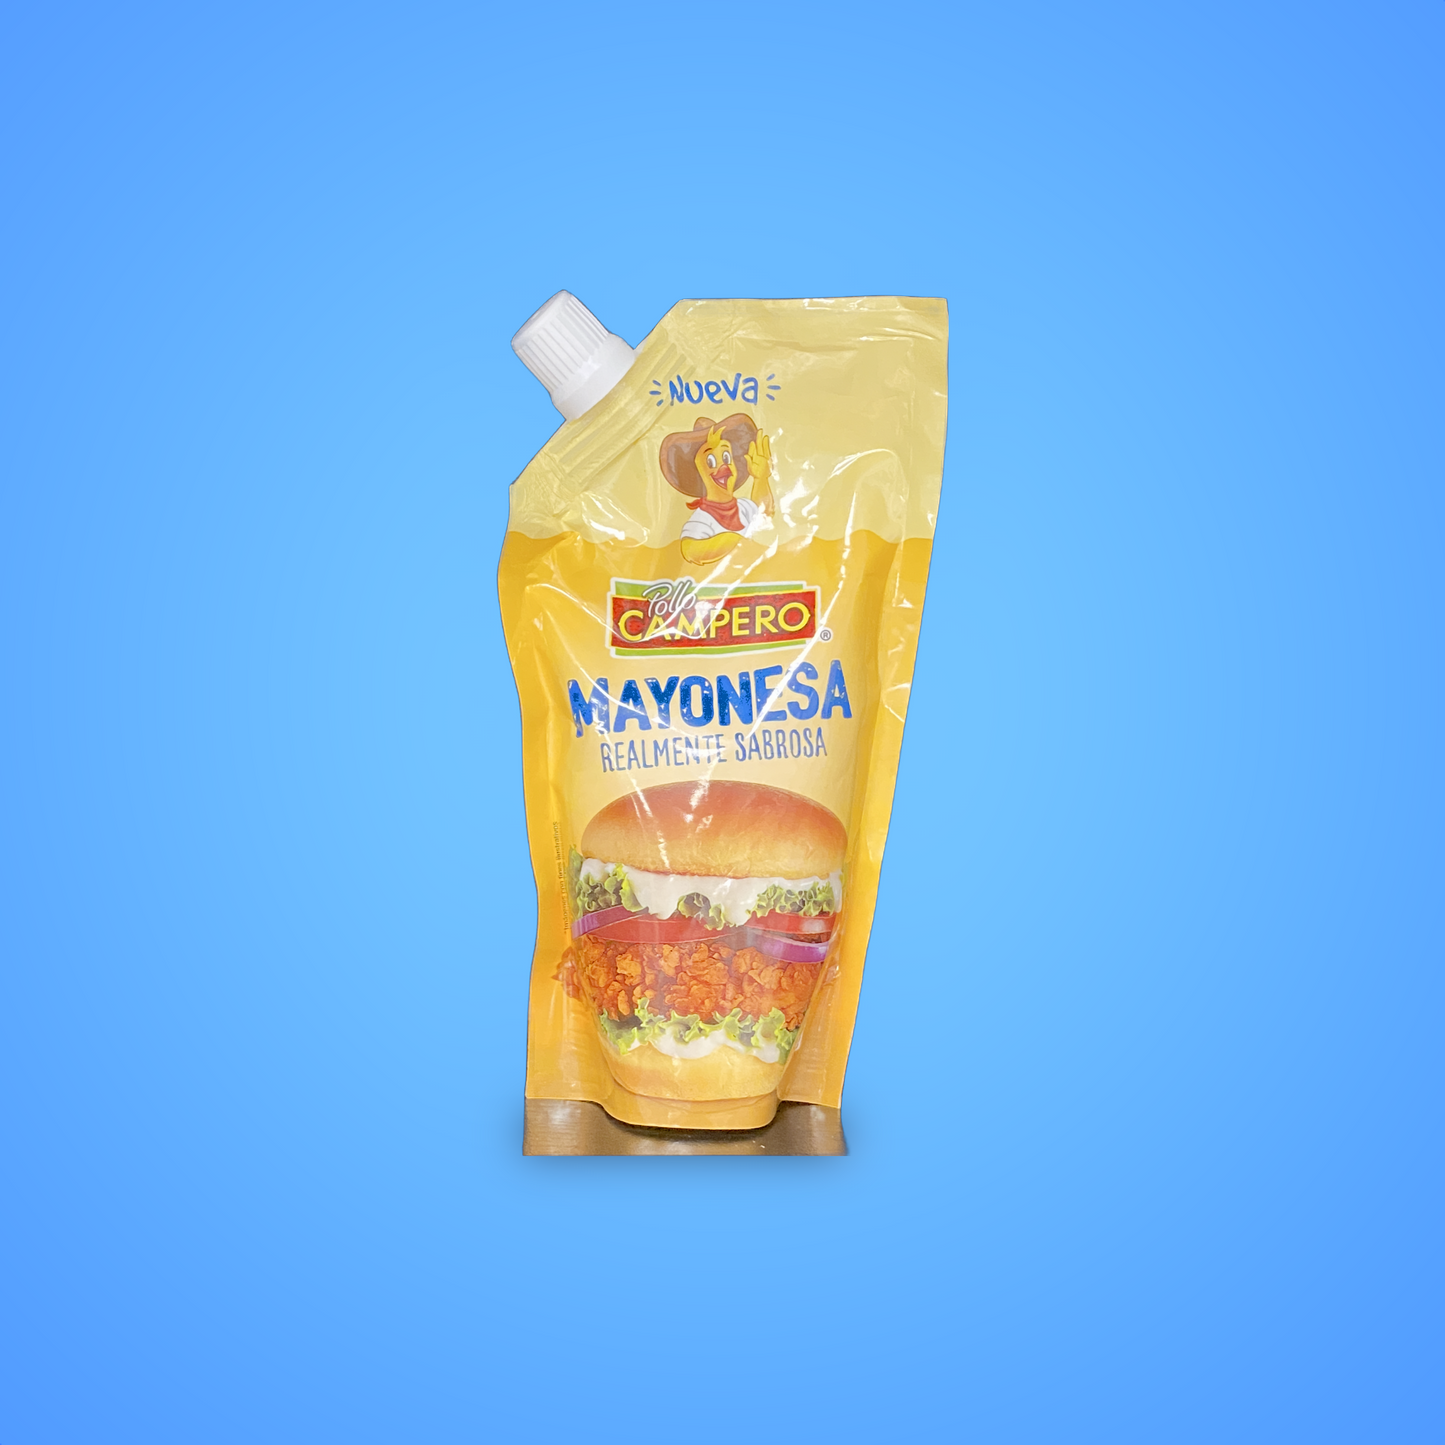 Mayonesa campero